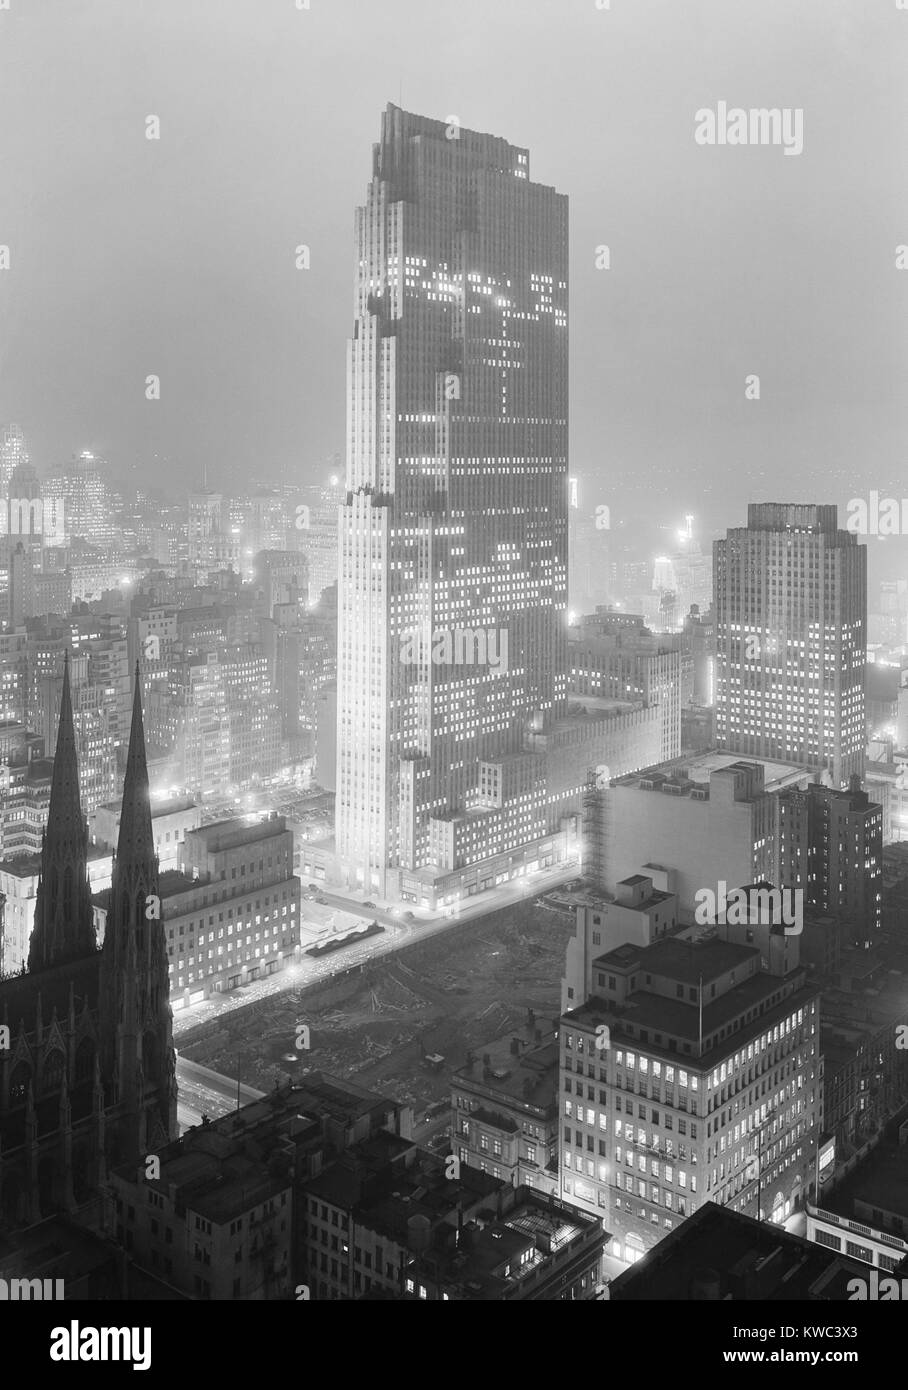 Vista notturna di Rockefeller Center e edificio RCA da 515 Madison Avenue su dicembre 5, 1933. Le partite di fronte alla strada dalla Cattedrale di San Patrizio (inferiore sinistro) attendono lo sviluppo. Il complesso di 19 edifici commerciali è stata completata nel 1939. Foto di Samuel H. Gottscho. (BSLOC 2015 14 201) Foto Stock